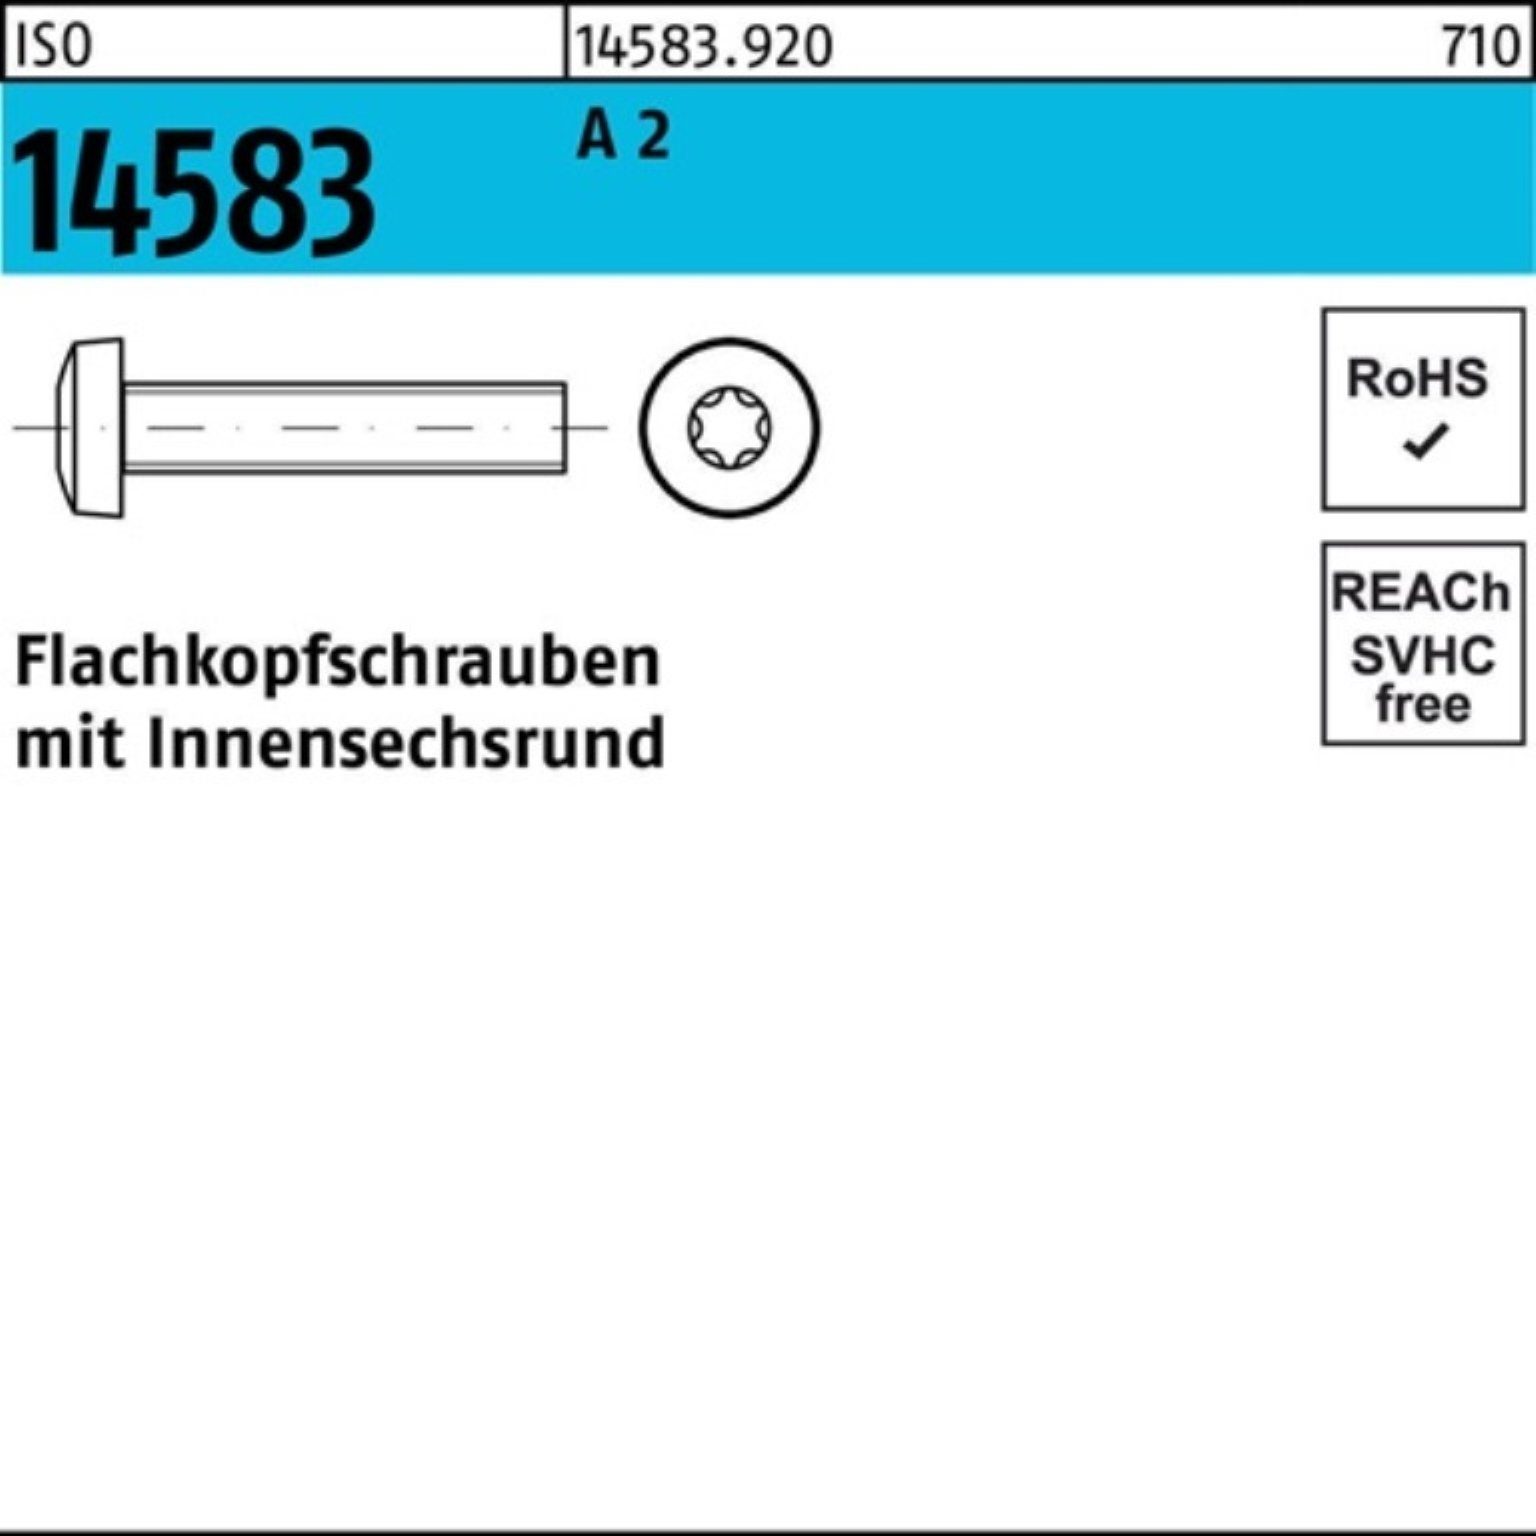 ISO I A 2 Flachkopfschraube Reyher Pack Schraube 12 ISR 1000 1000er M1,6x Stück 14583